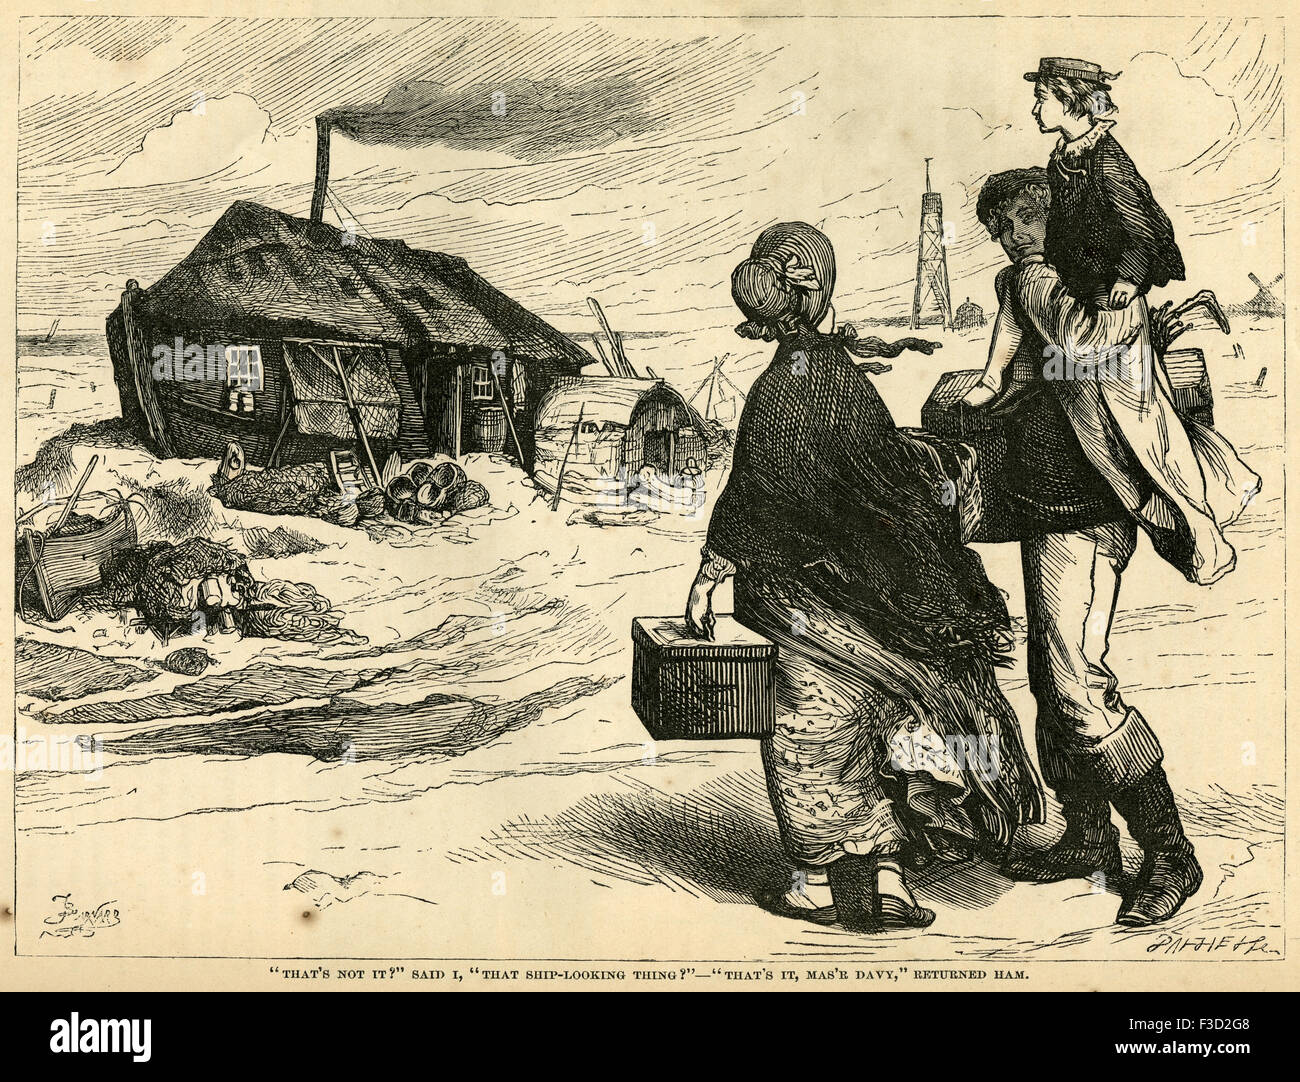 Illustrazione da 1872 edizione di Charles Dickens David Copperfield. "Che non è vero?" Ho detto 'che la nave-guardare cosa?" - "Ecco, Mas'r Davy,' restituito l'uomo. Foto Stock